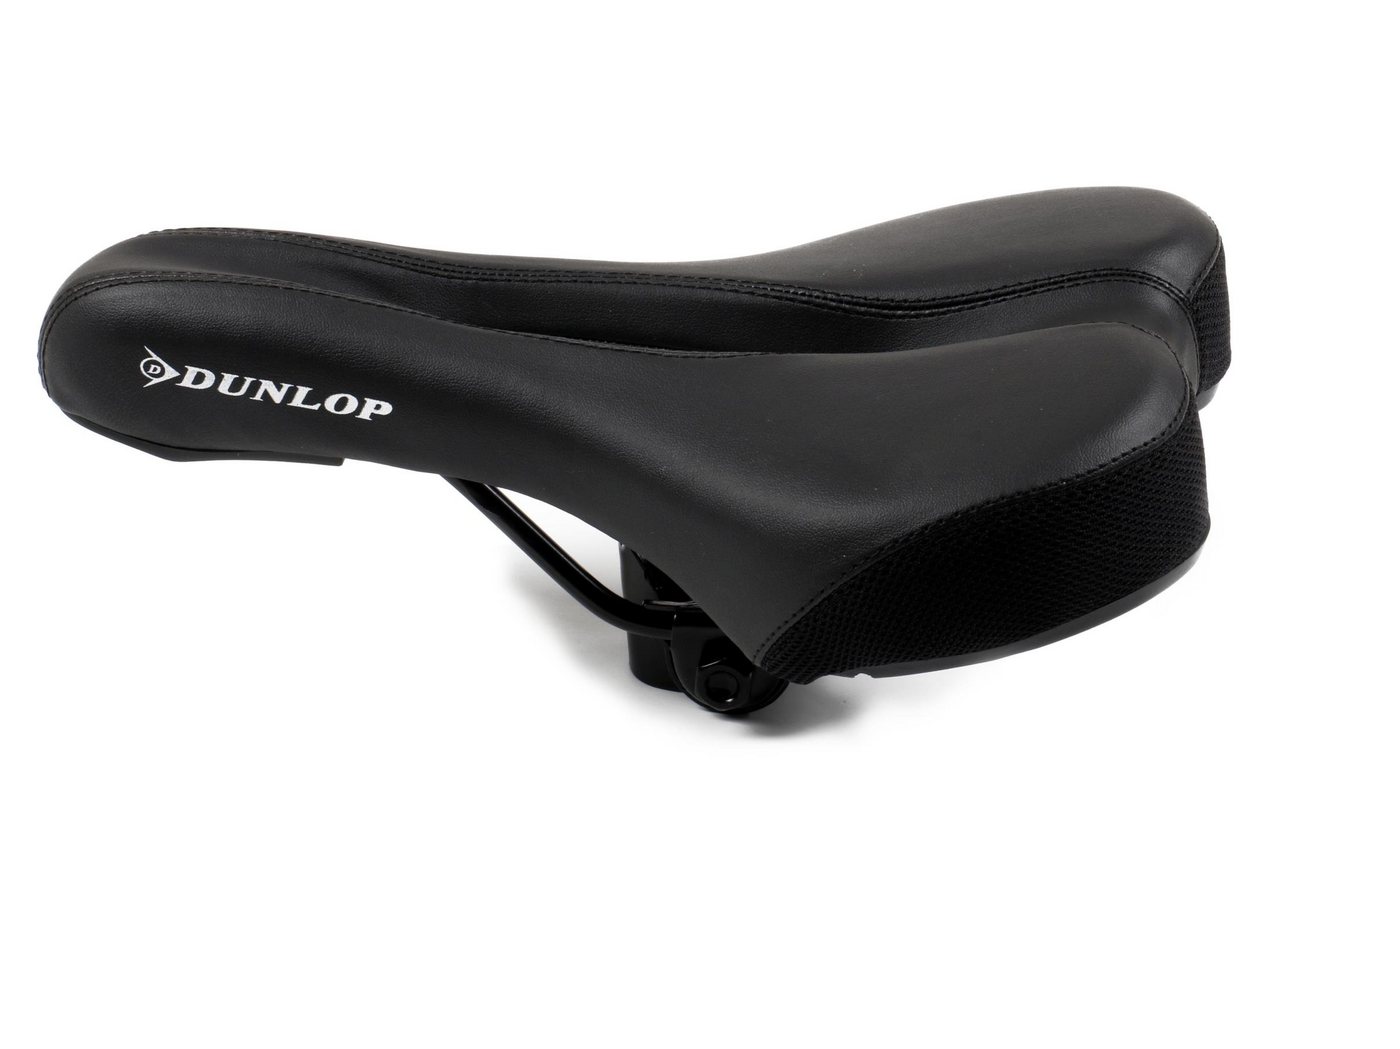 Dunlop Fahrradsattel für MTB, City-, Touren- und Rennenräder (Sattel gefedert), Fahrradsattel mit Komfortzonenausschnitt von Dunlop